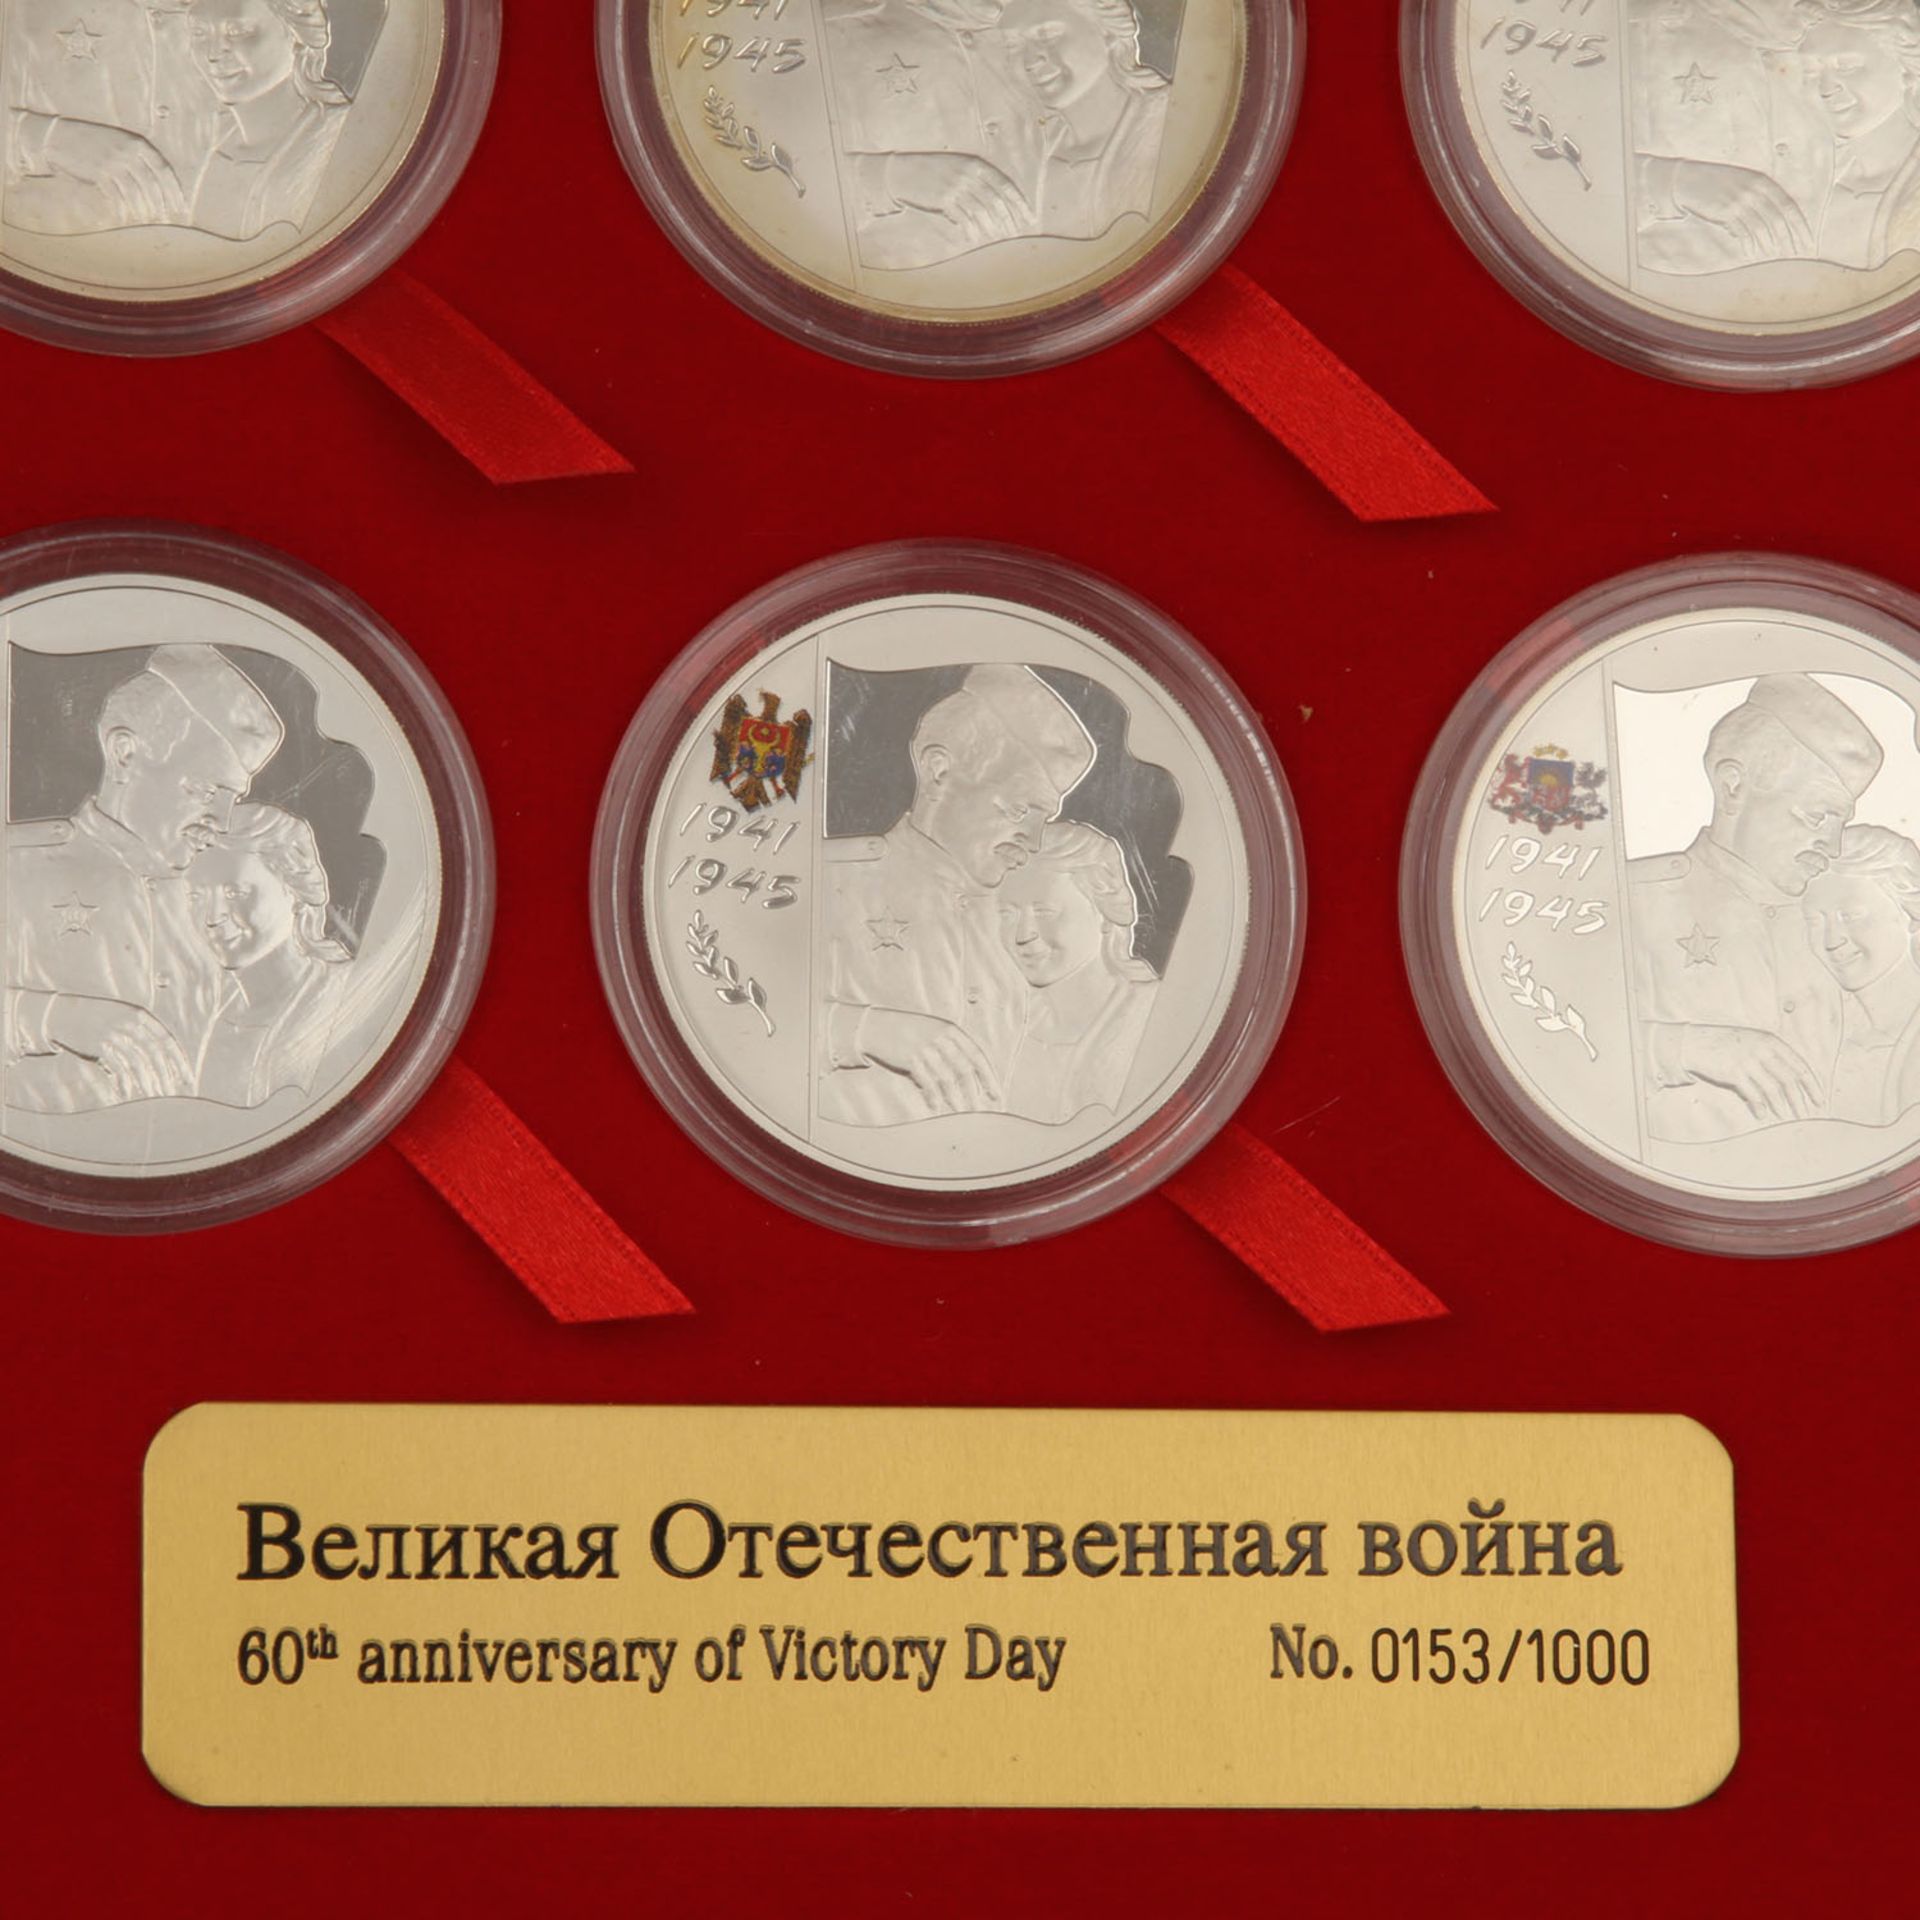 Russland 1941-1945 "Great Patriotic War" - Hoch exklusives und seltenesSet aus 15 Münzen zu je 3 - Bild 5 aus 9